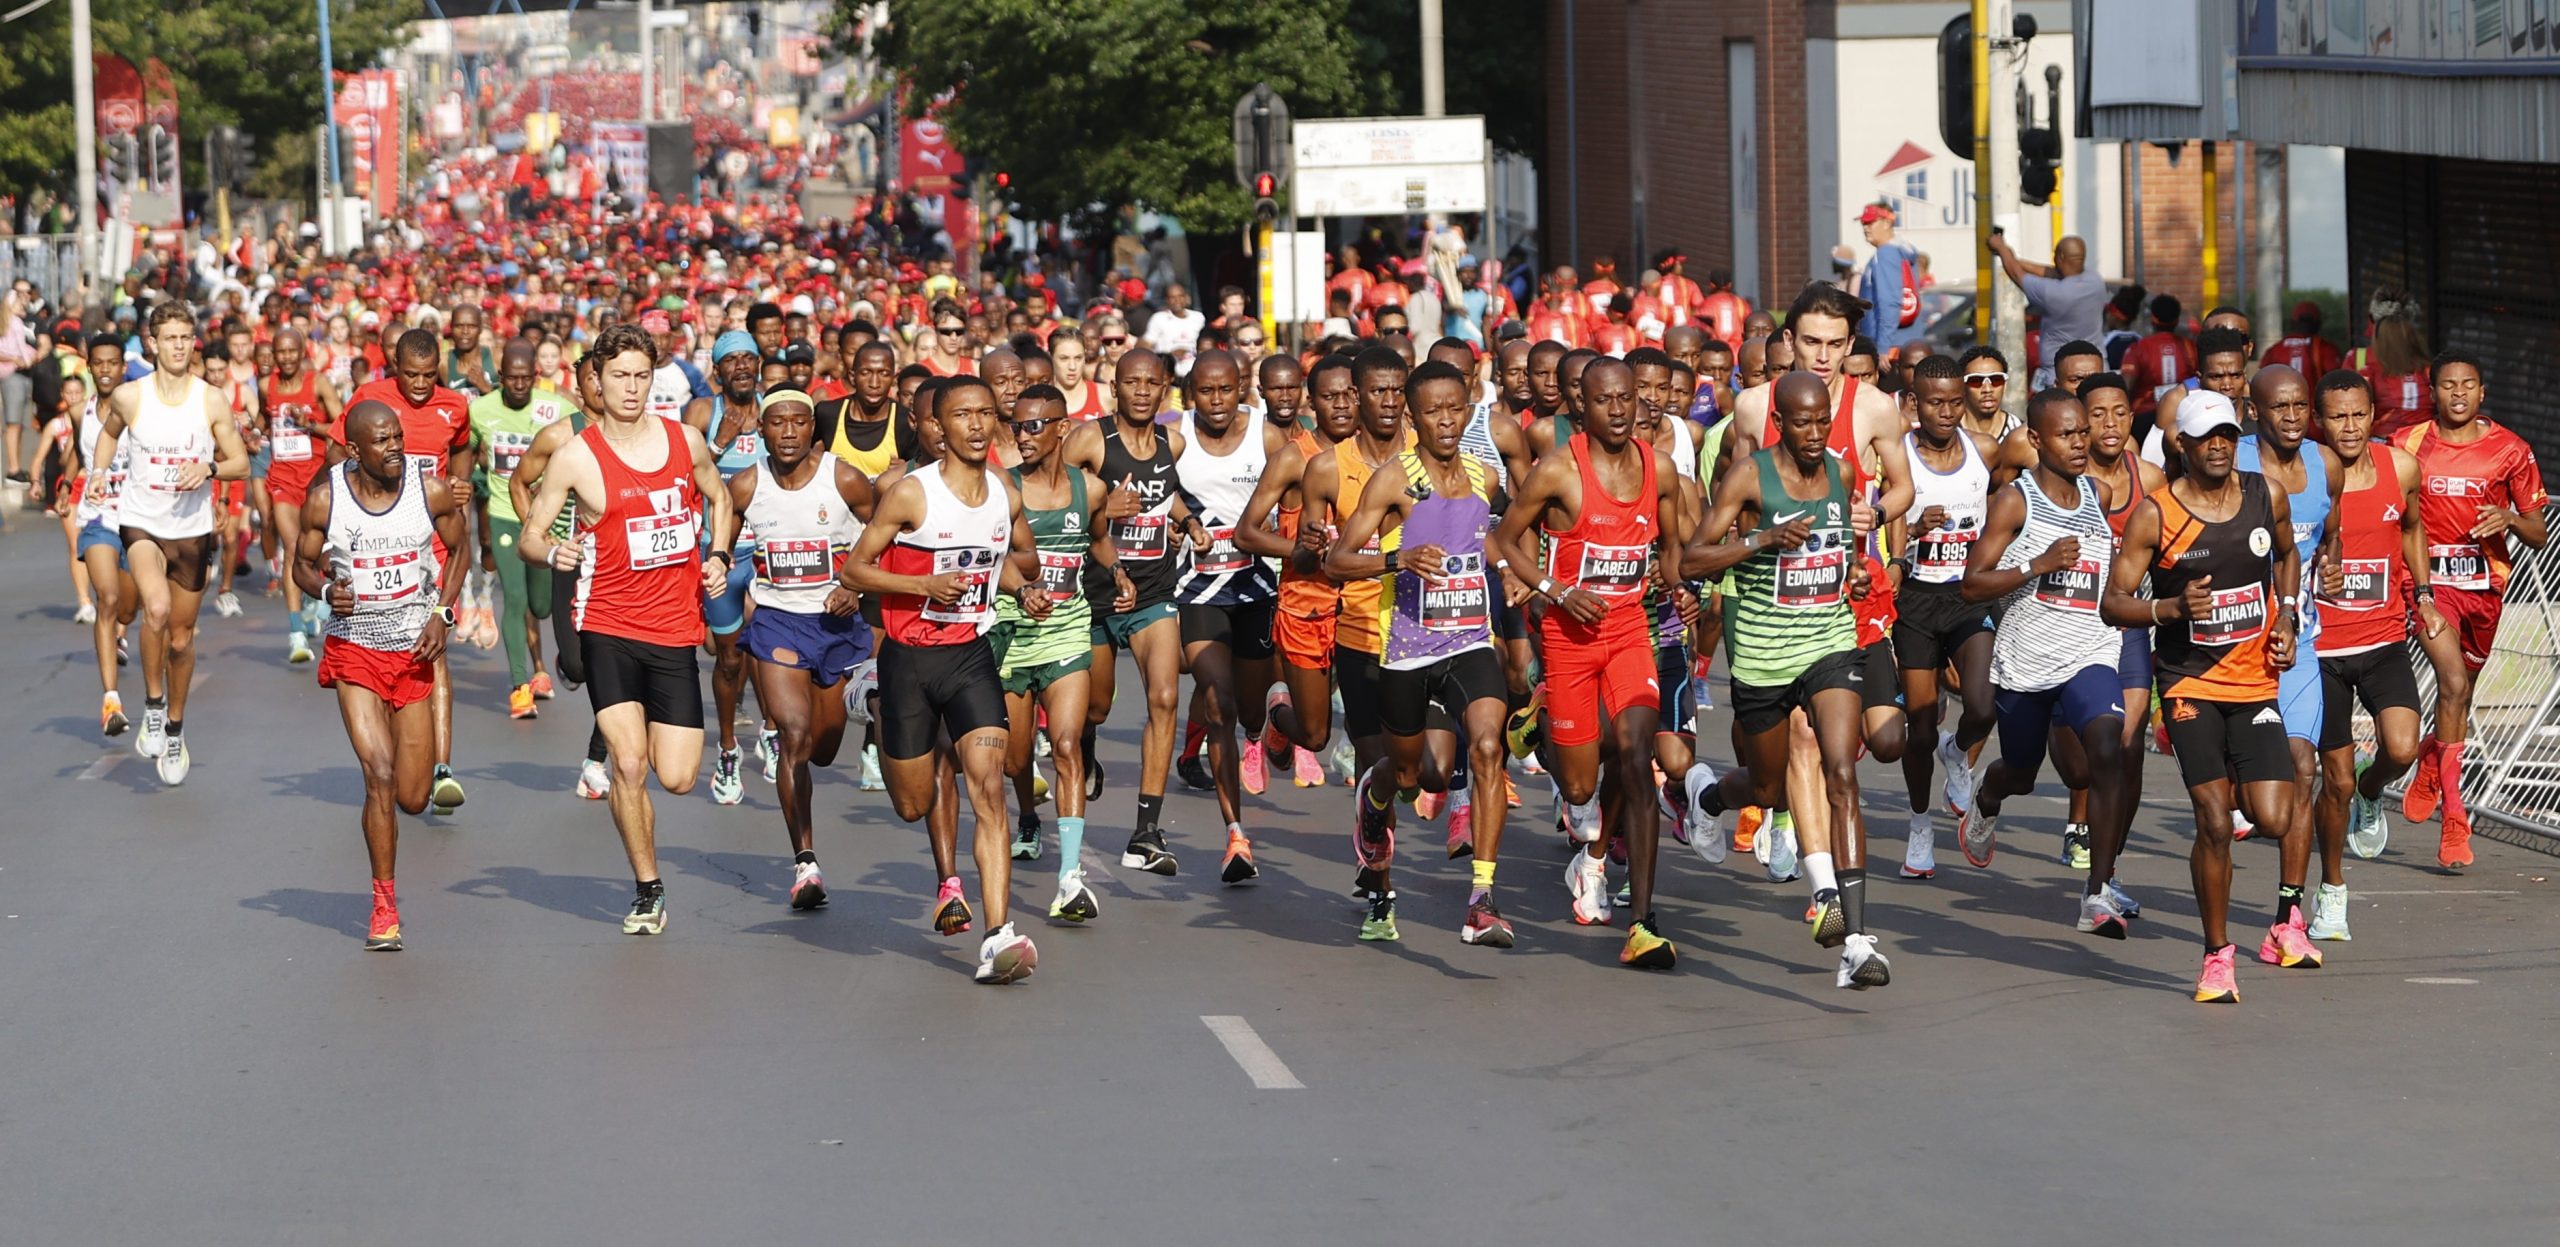 Absa RUN YOUR CITY JOBURG 10K Elite Race Start by Felix Dlangamandla